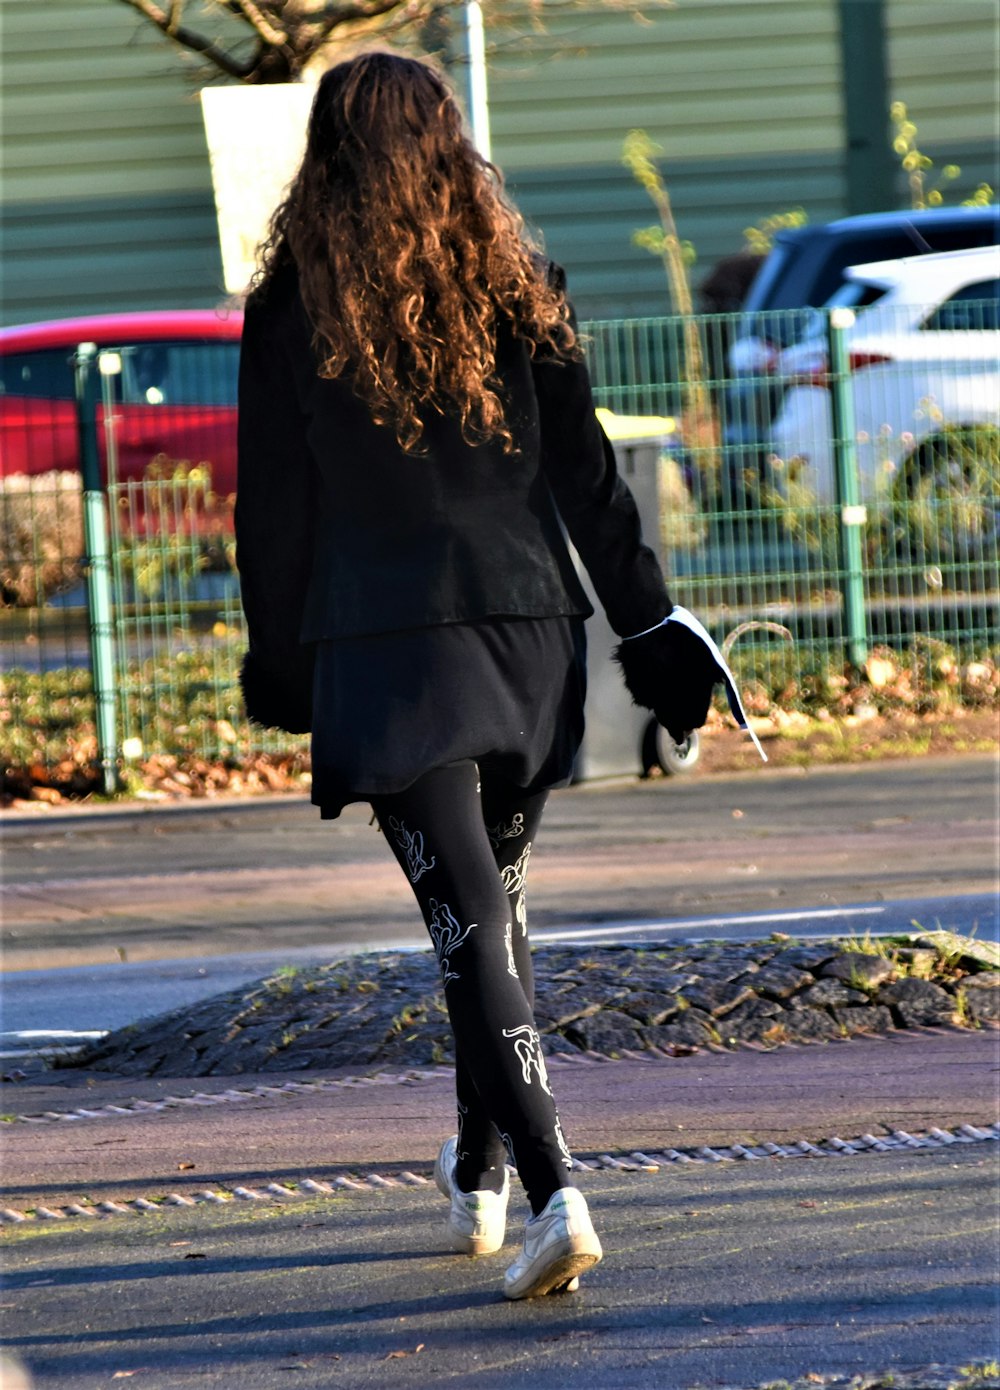 mulher no casaco preto andando na calçada durante o dia